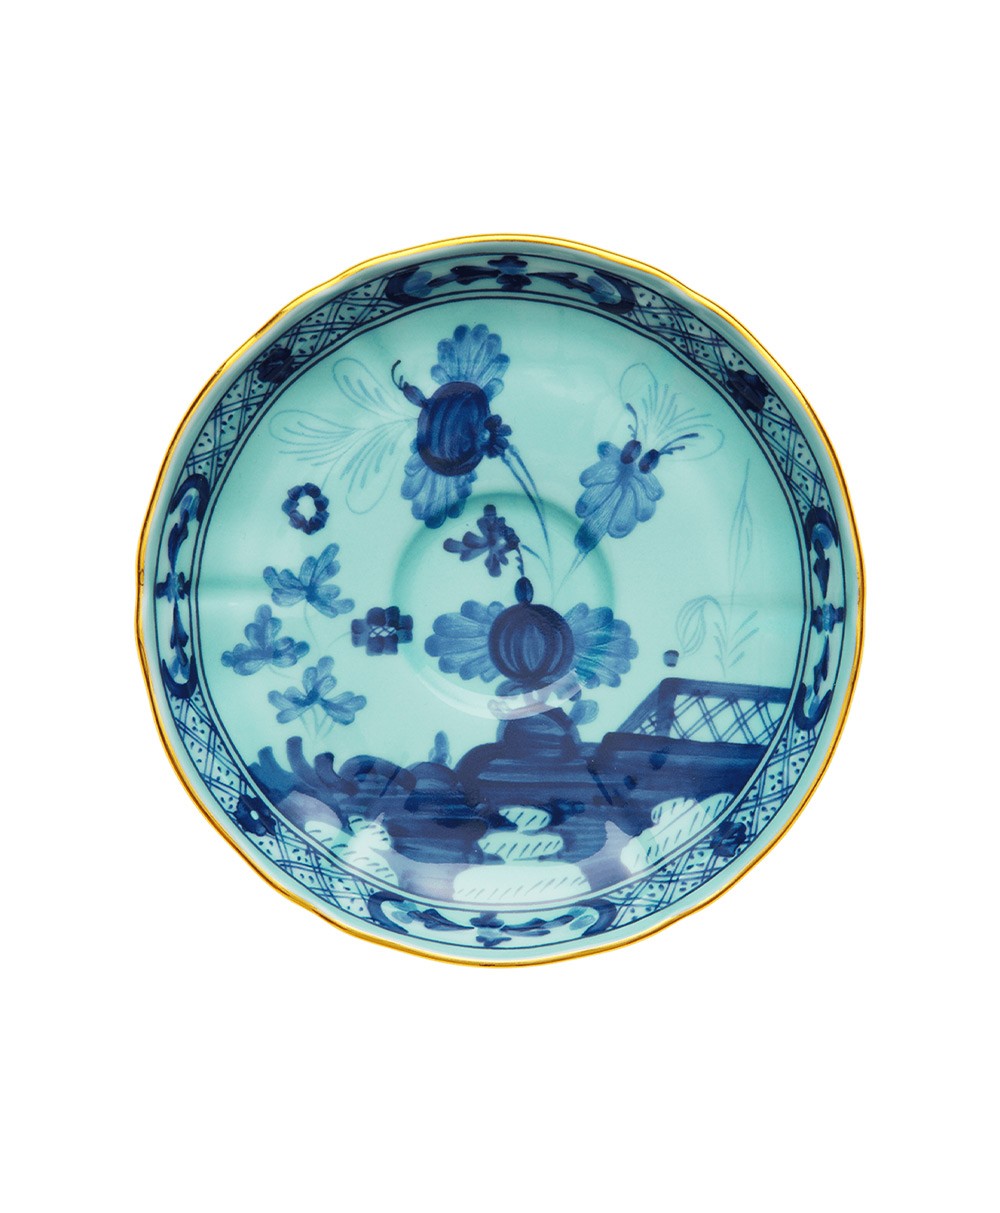 Produktbild "Oriente Iris Tee Untertasse" von Ginori 1735 im RAUM Concept store